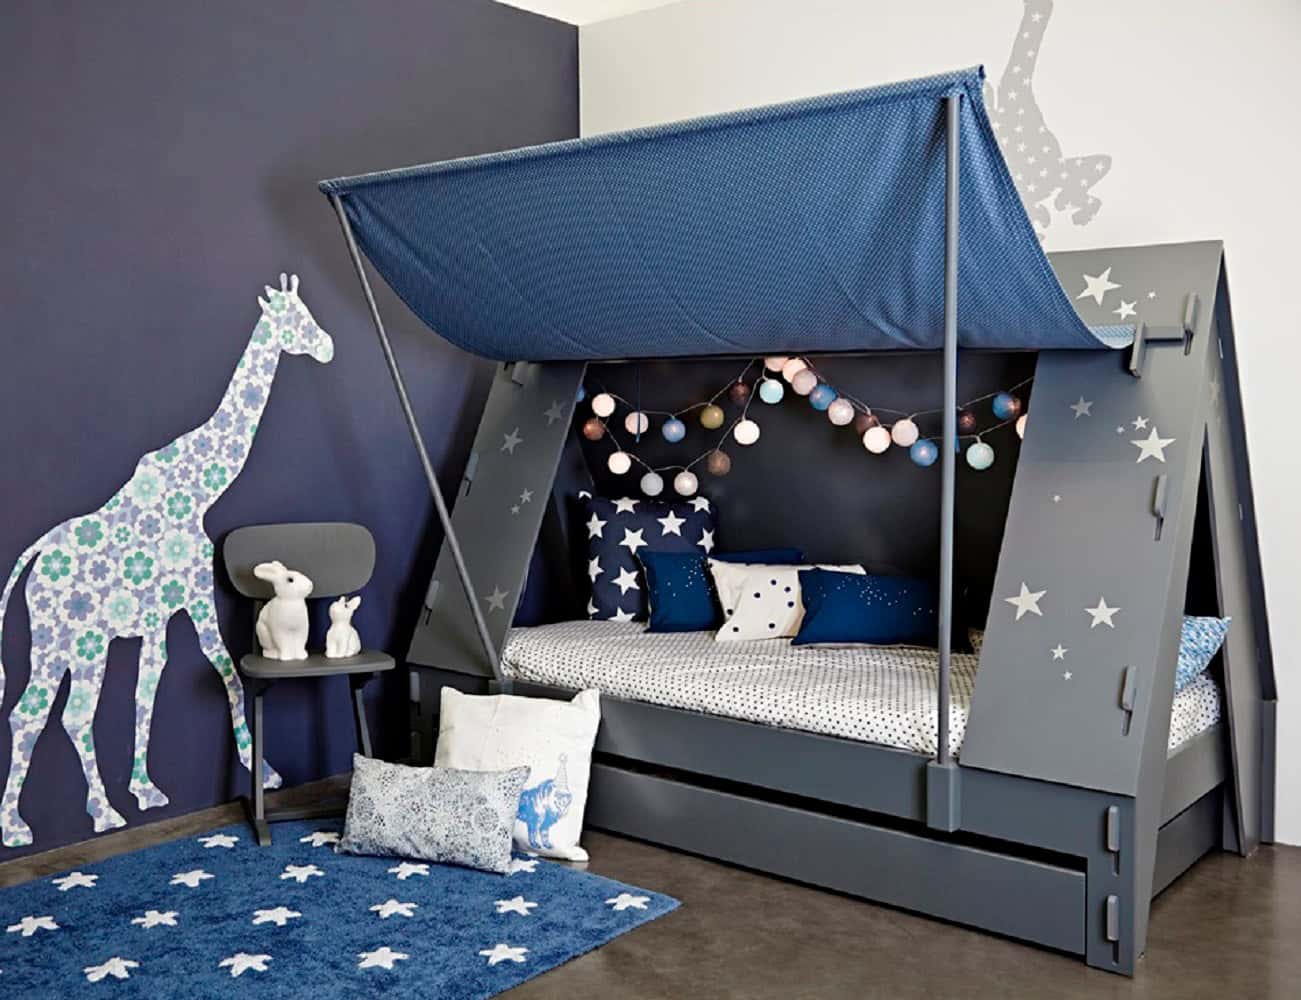 سرير متر اطفال (فراش) طراز خشبي لون طبيعي طري مريح